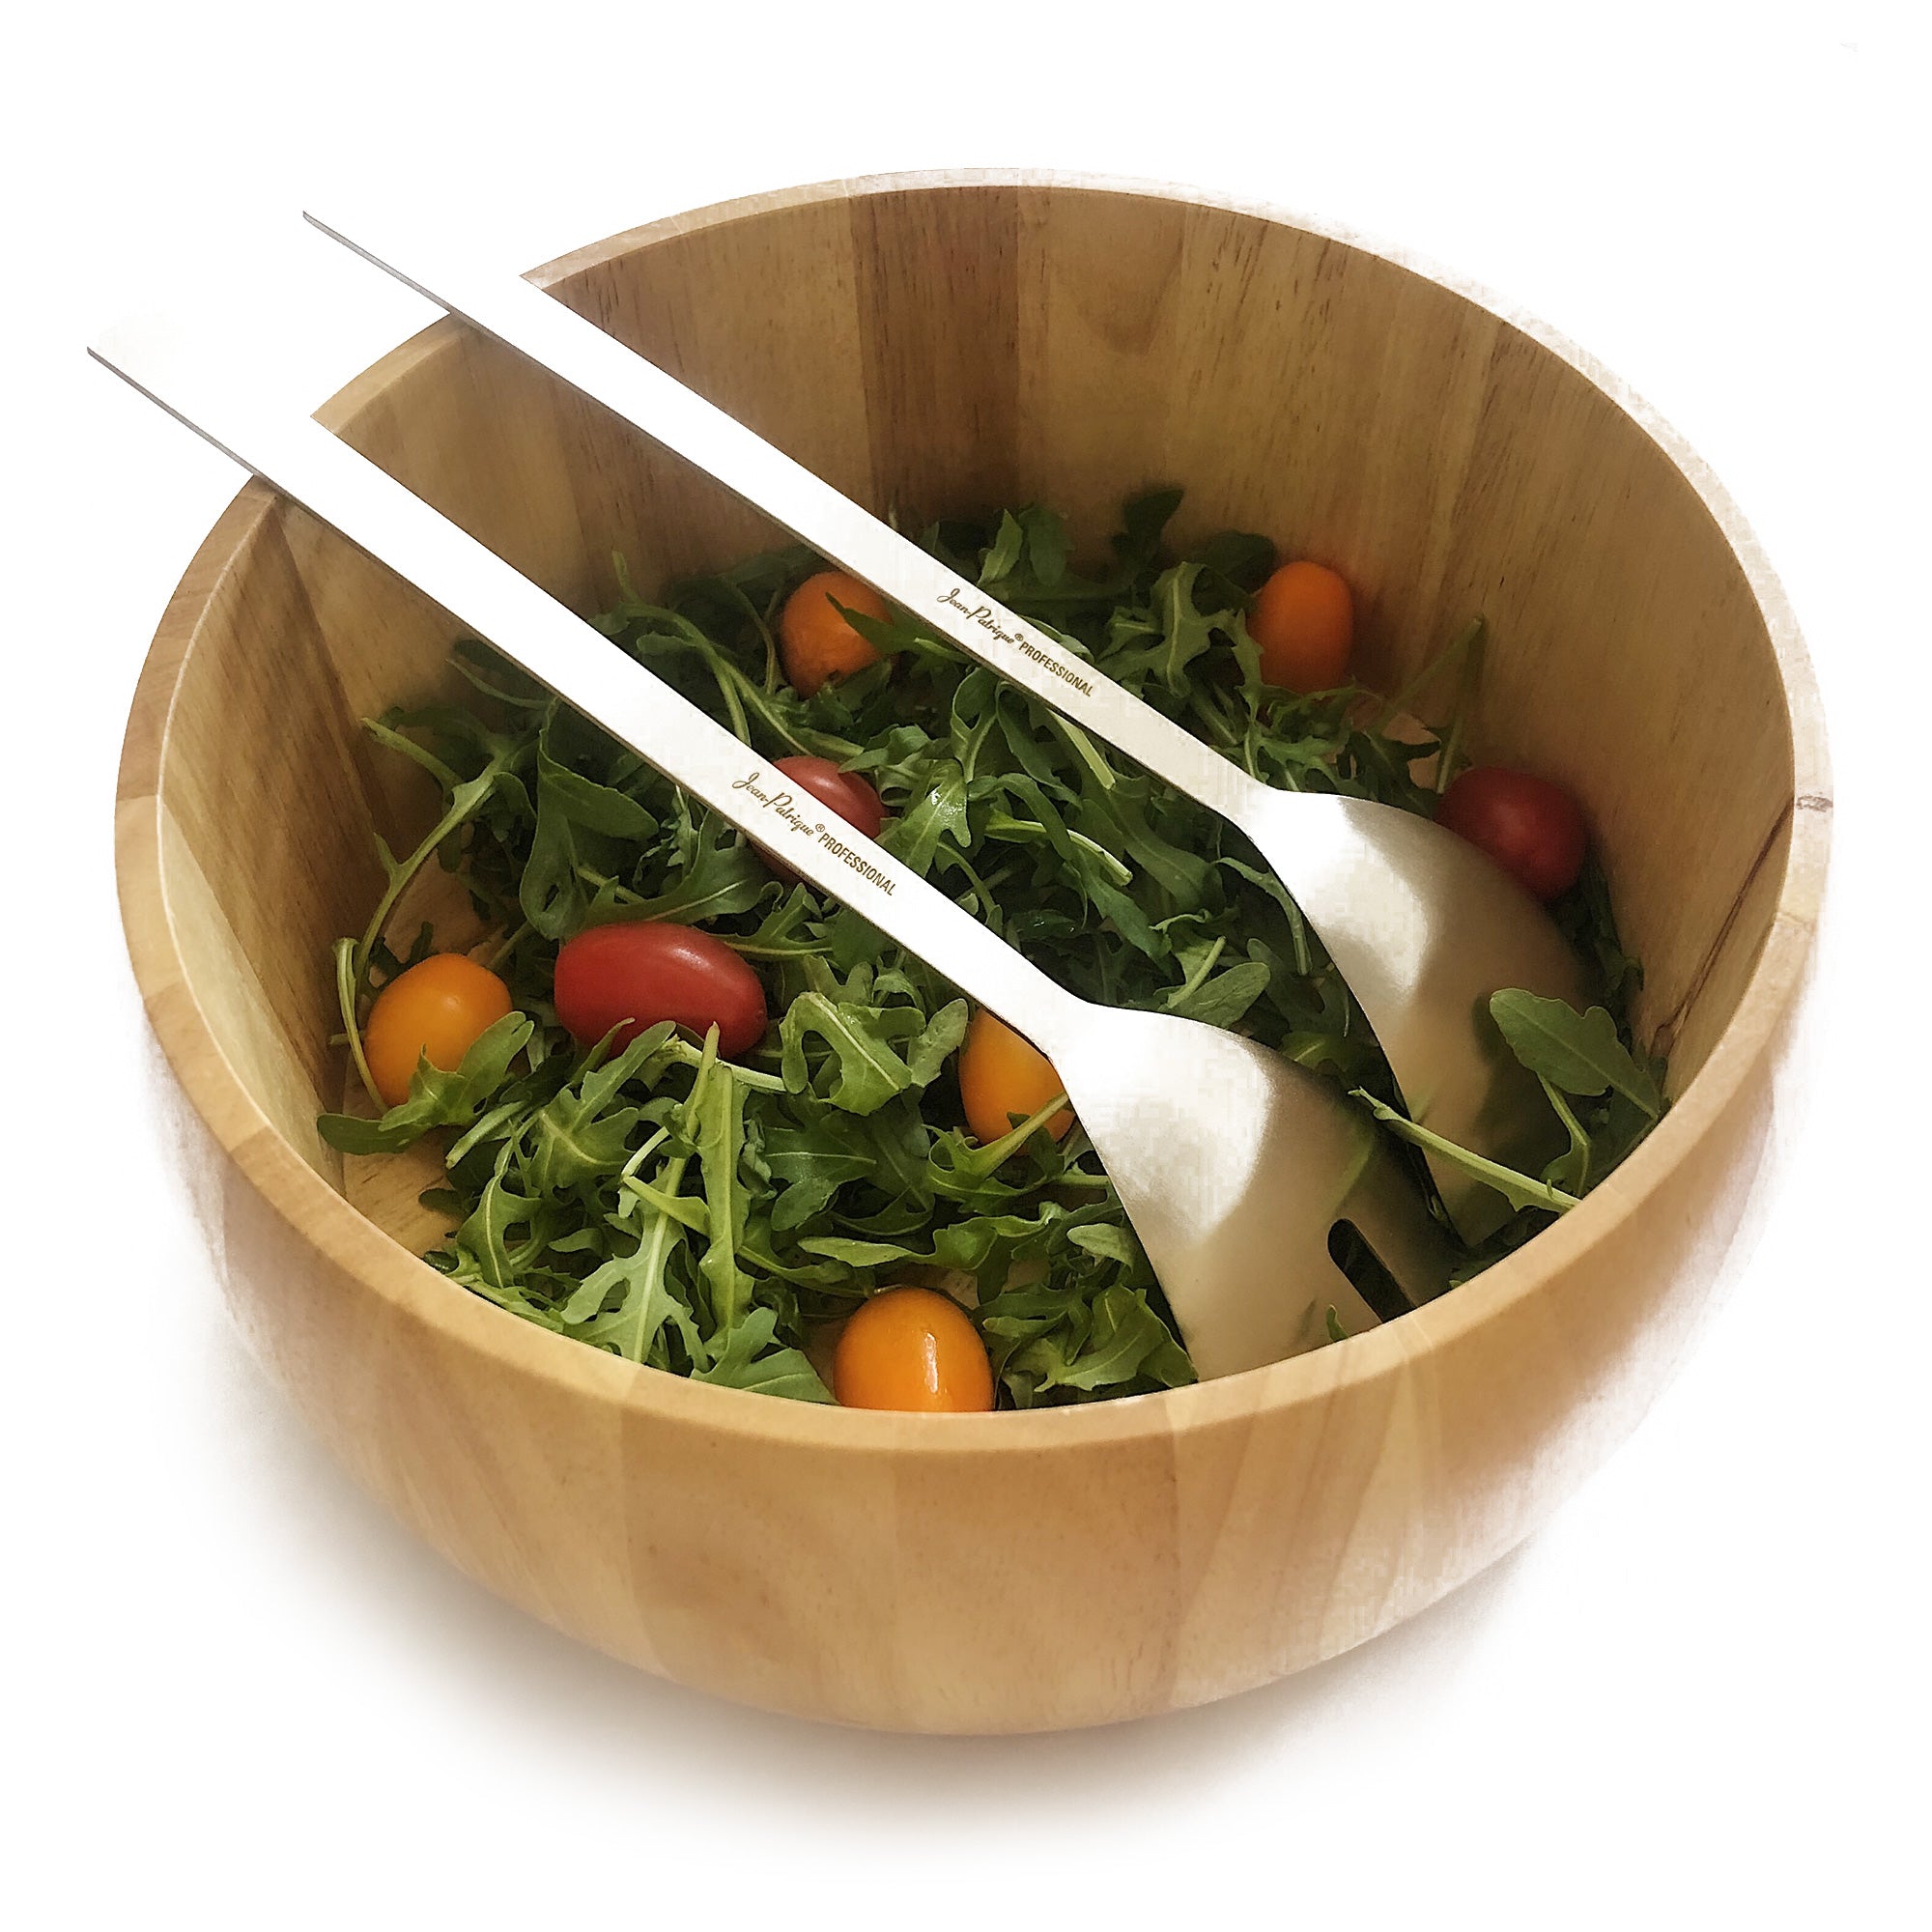 Salad Bowl & Stainless Steel Salad Servers